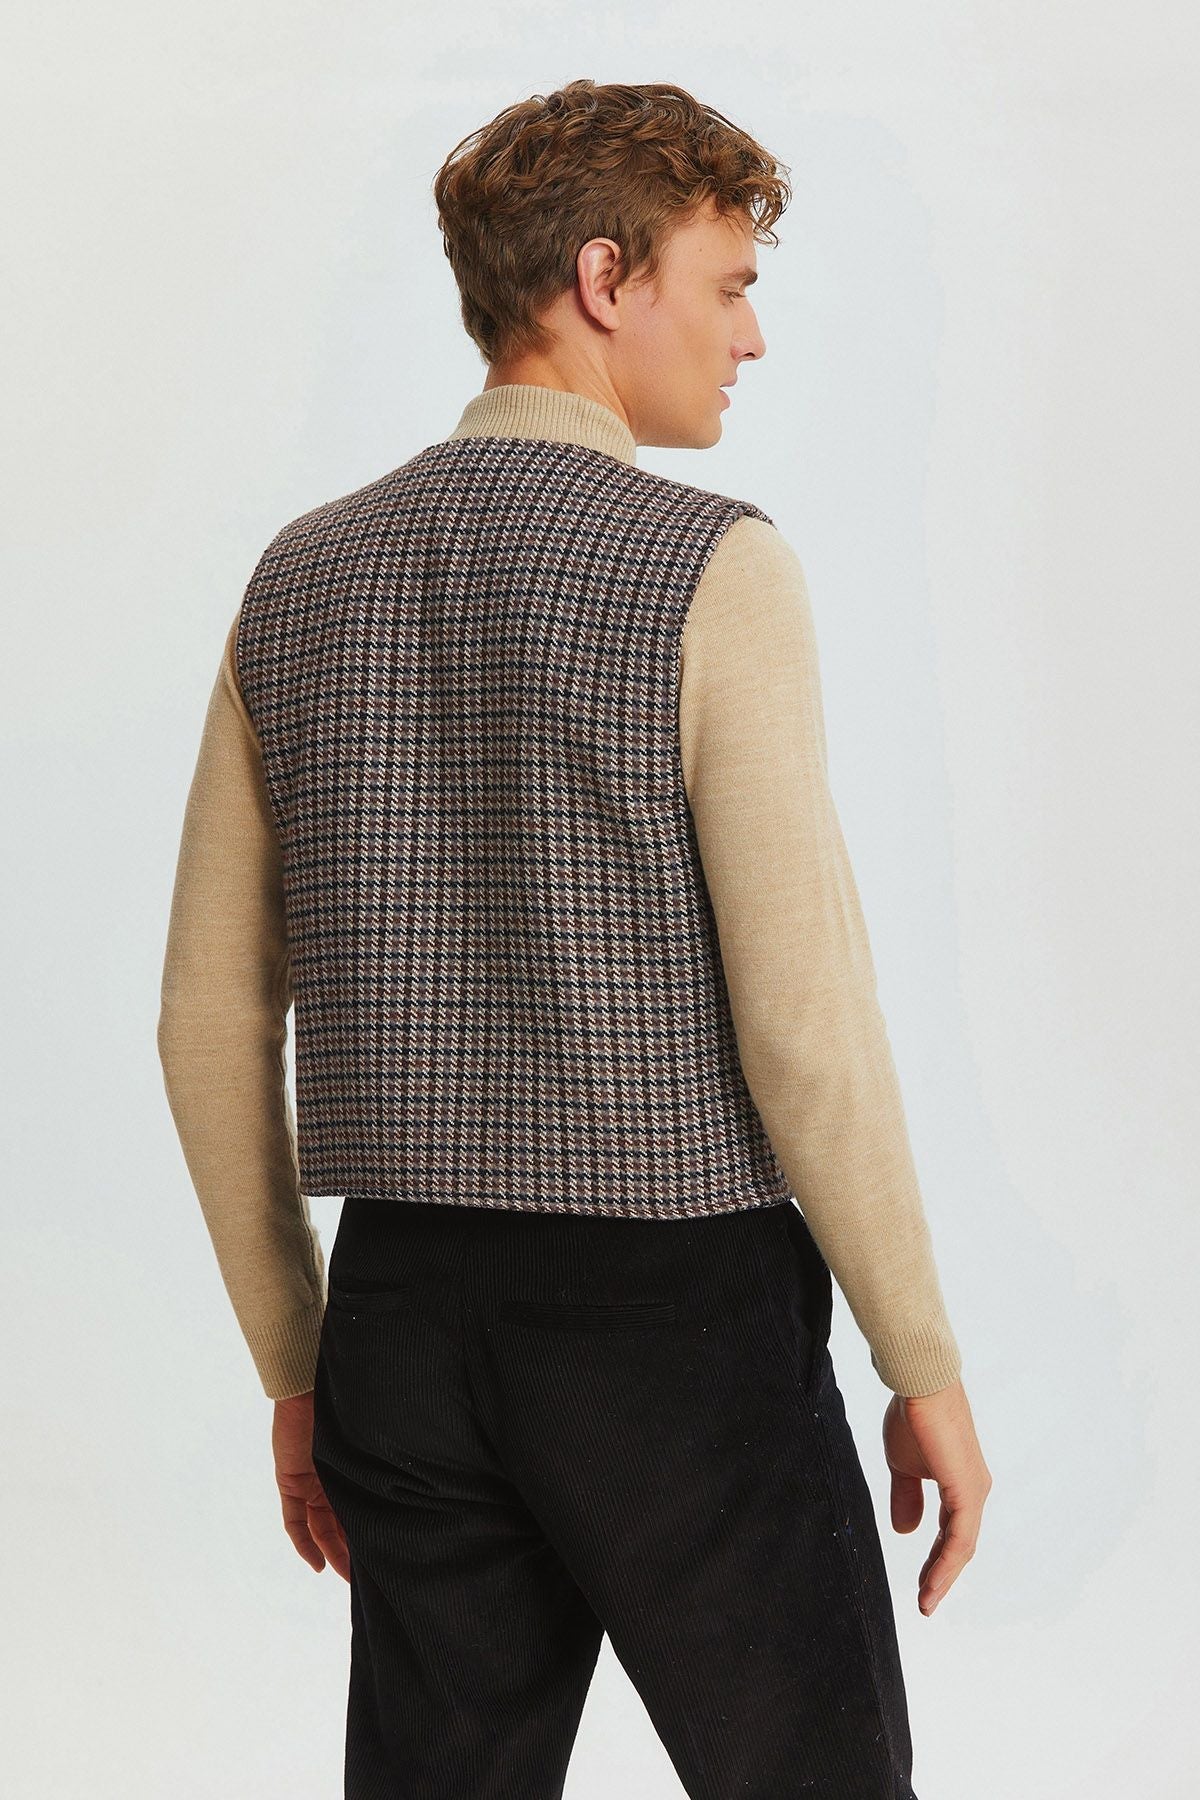 Bohemian Style Classic Cut Men's Vest Gray